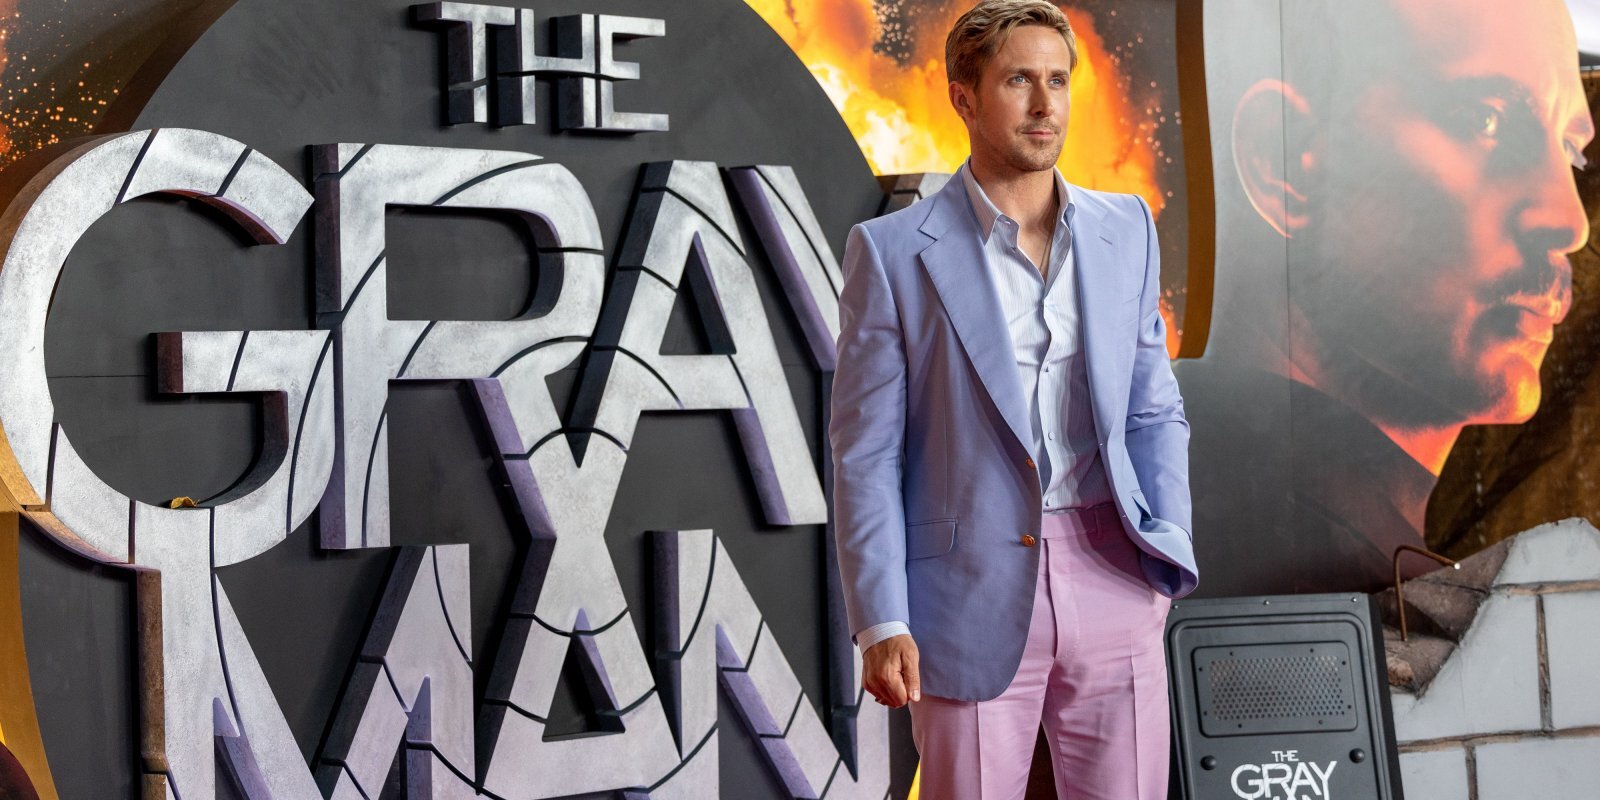 Vai 'Netflix' ir atradis savu Bondu? Raiens Goslings filmā 'The Gray Man'